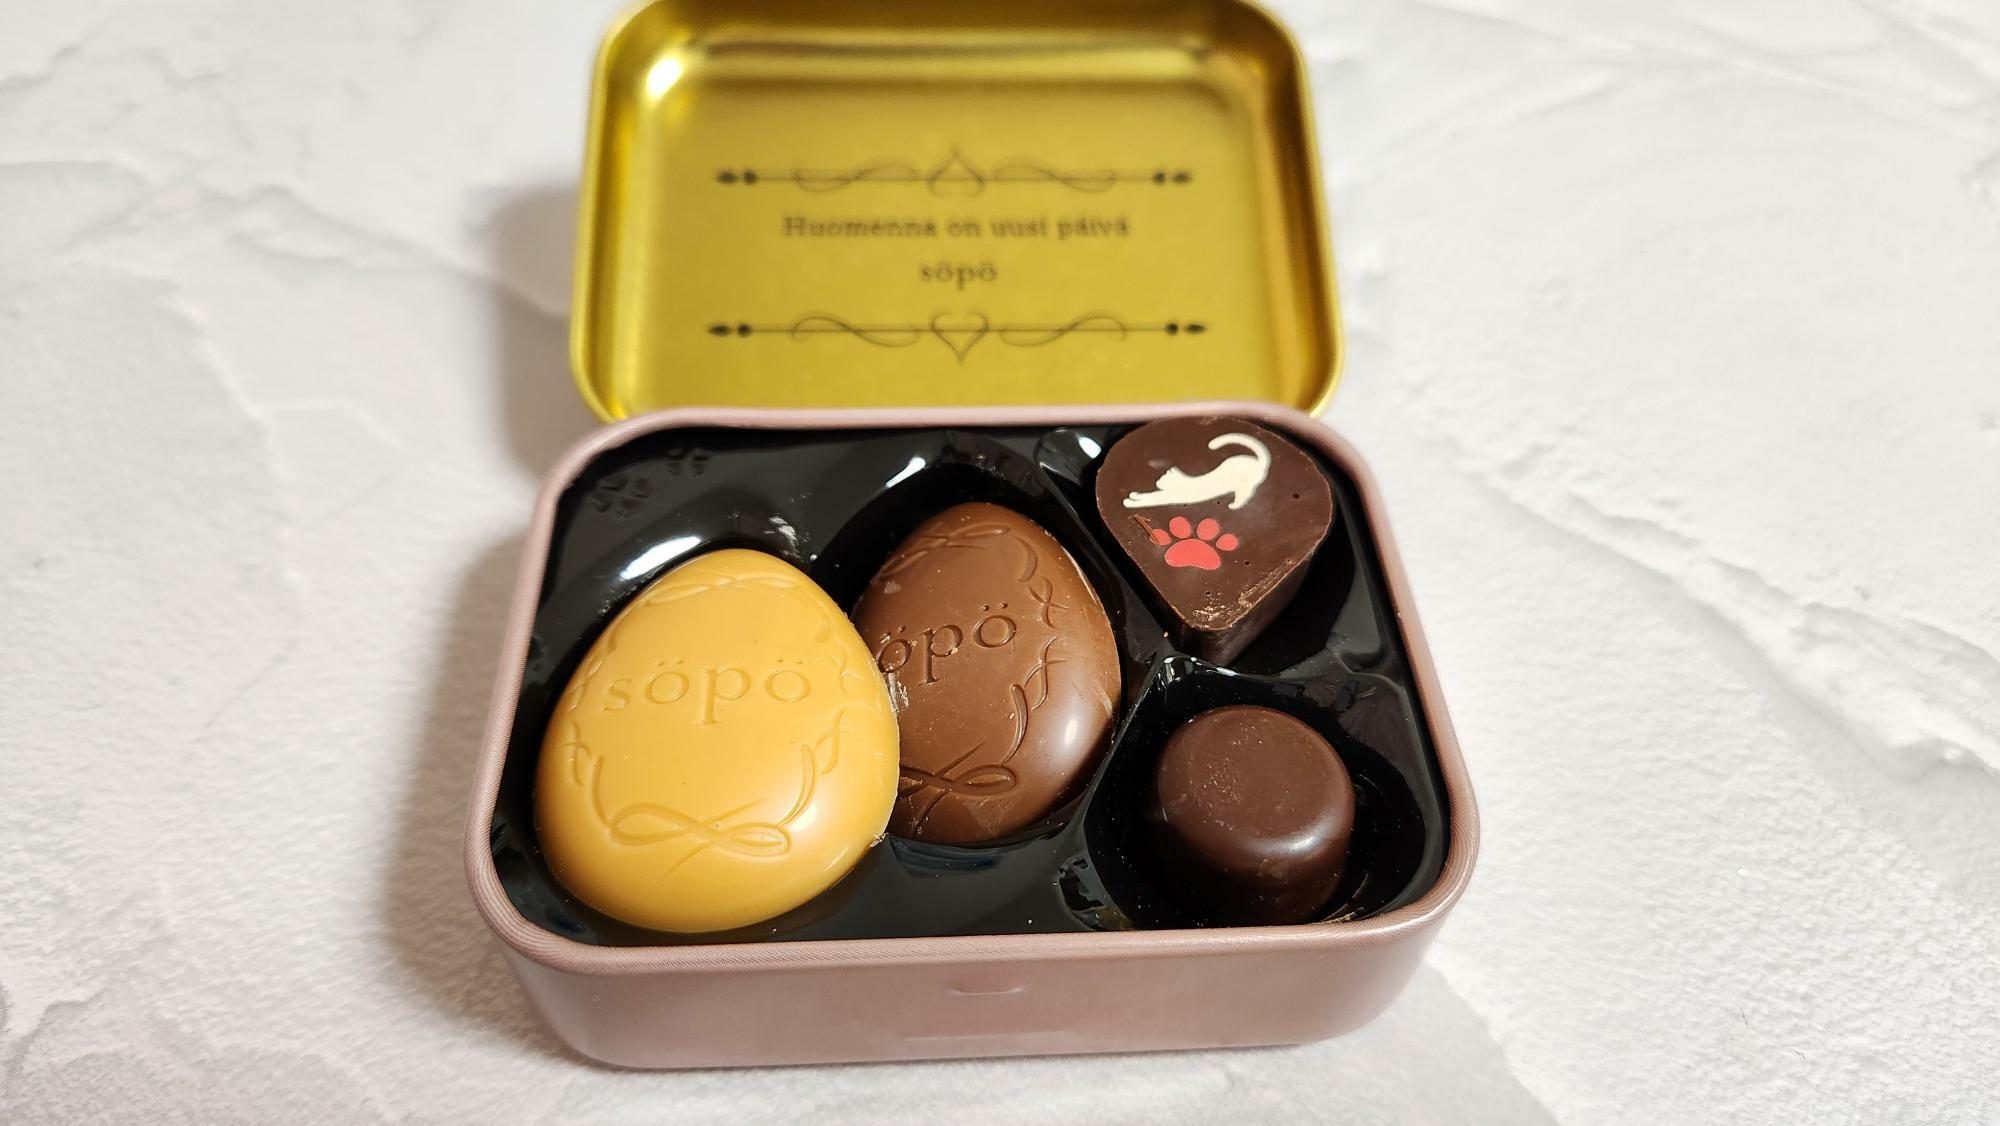 左からからキャラメル風味のチョコ・ミルクチョコ・プリントチョコ・プチショコラの4種類のチョコが収められていた。